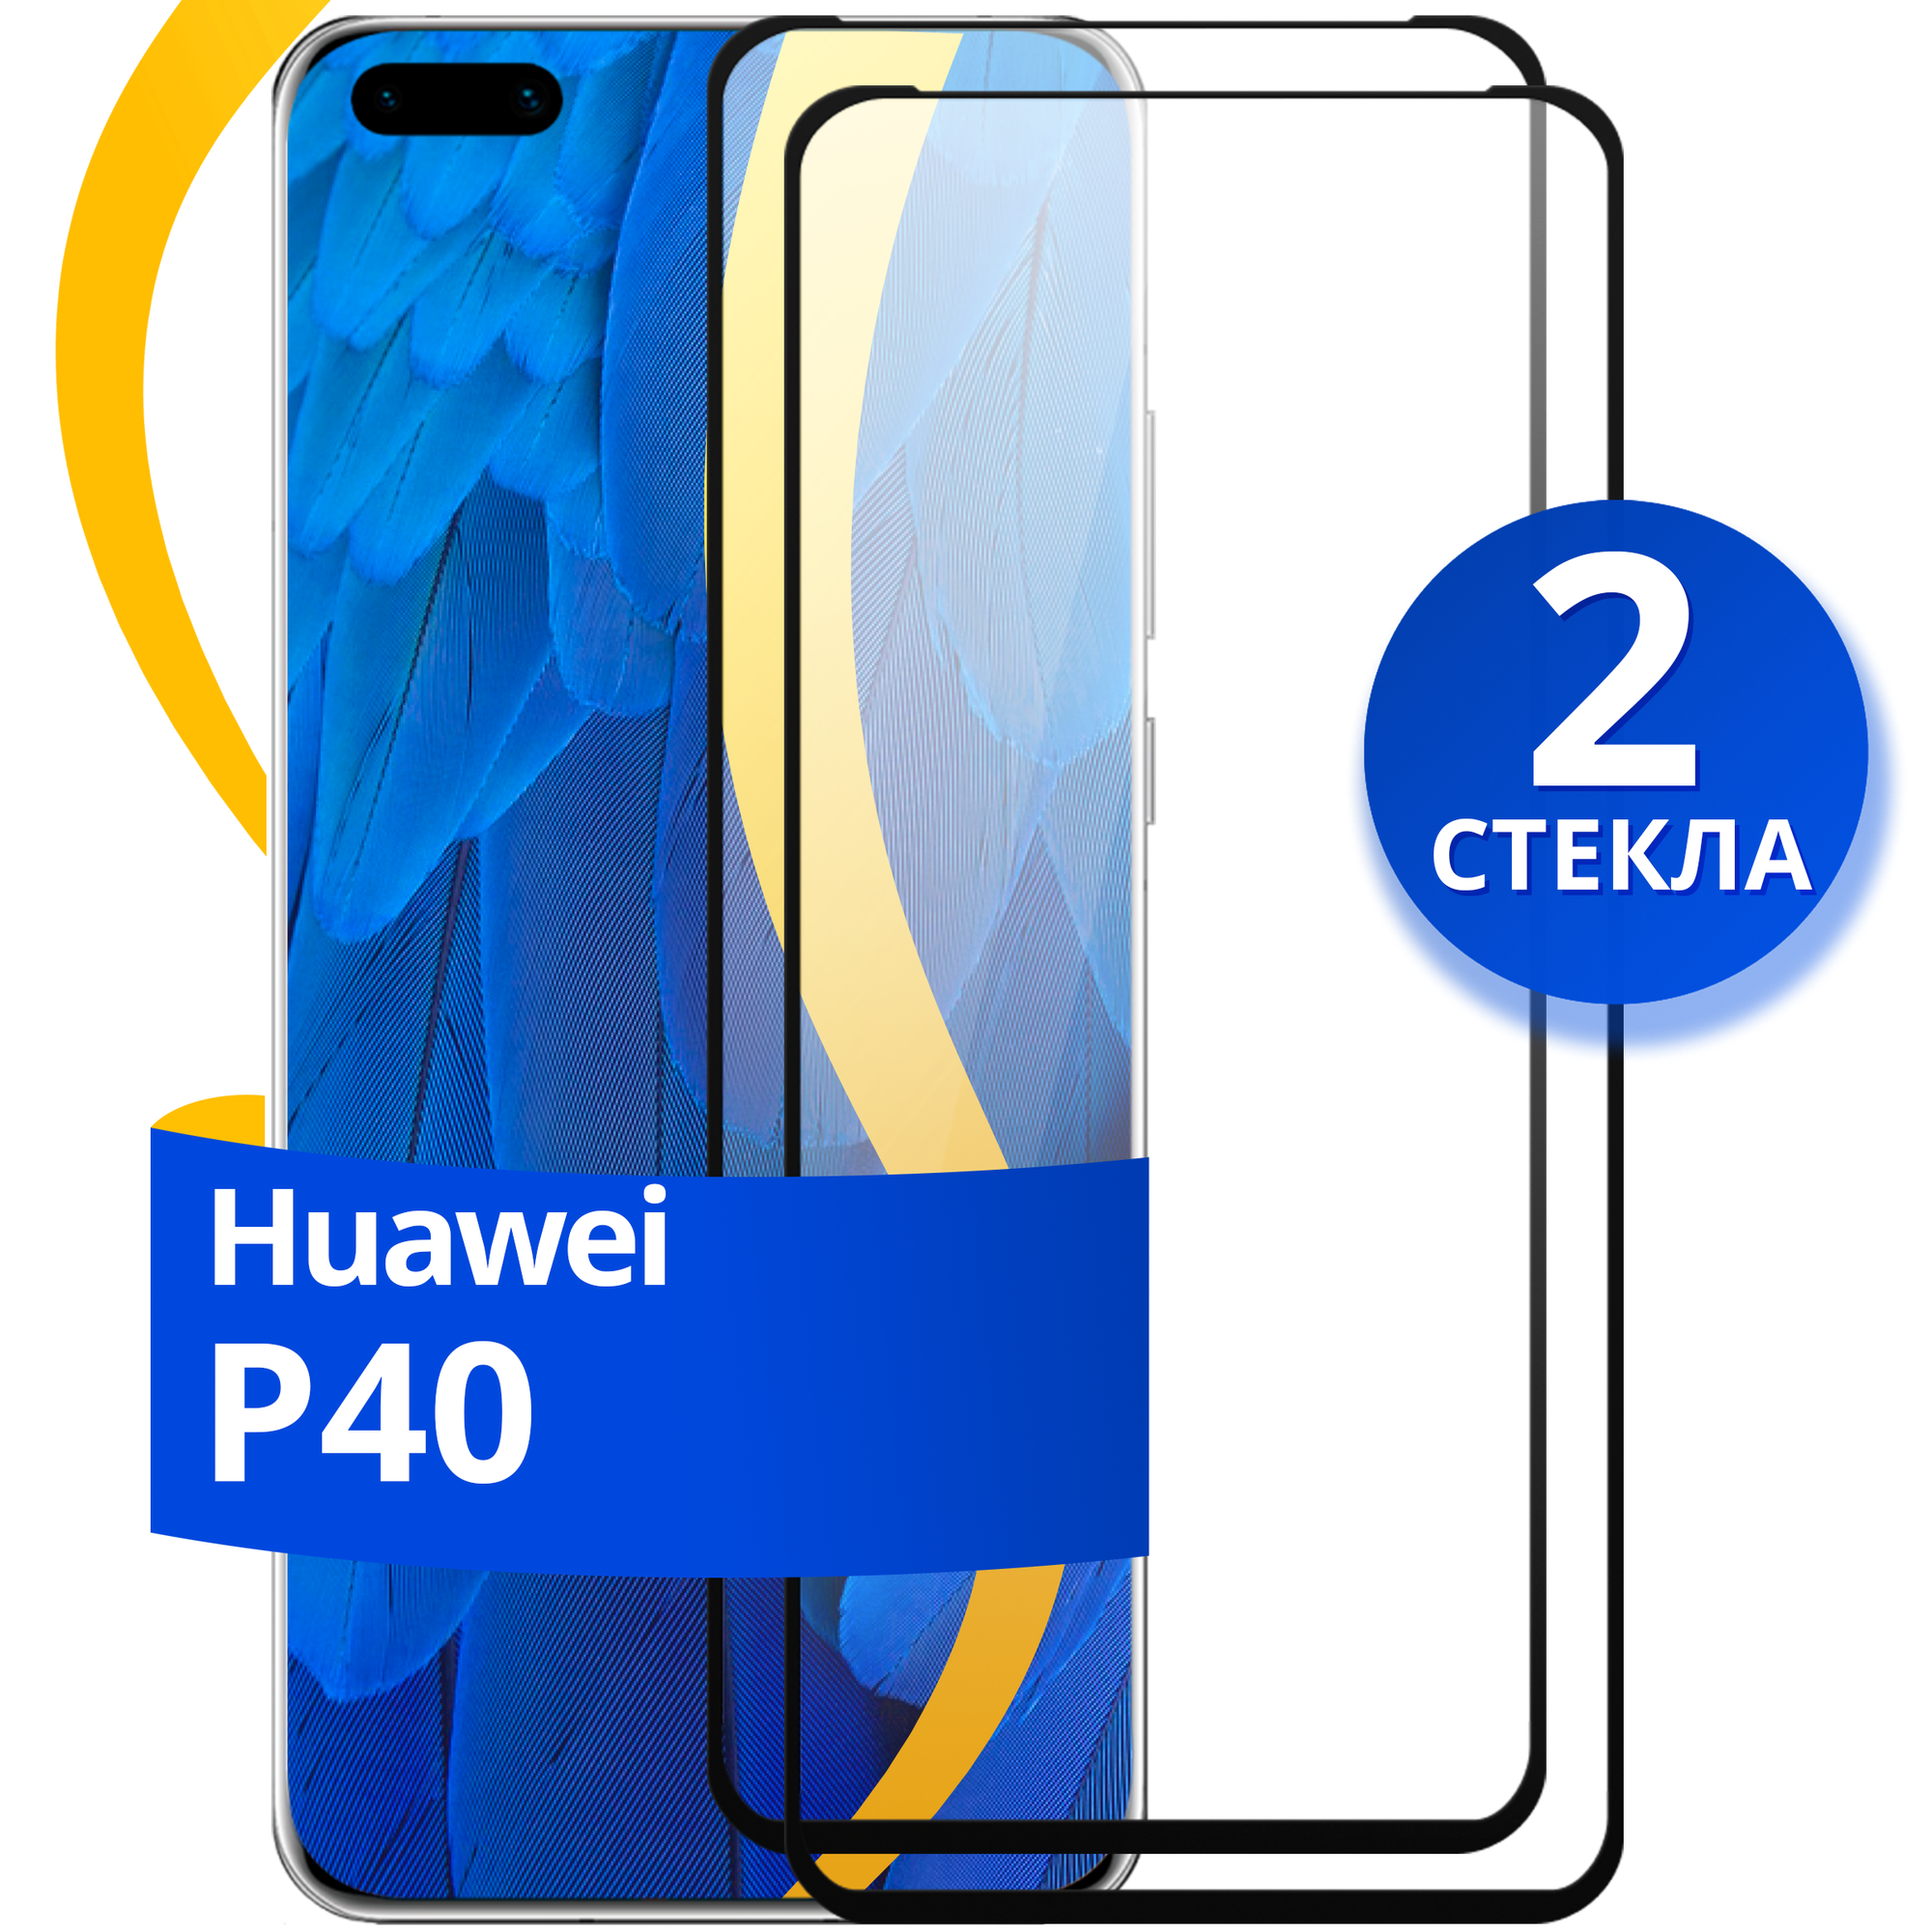 Комплект 2 шт защитное стекло для телефона Huawei P40 / Набор противоударных стекол на смартфон Хуавей Р40 с олеофобным покрытием